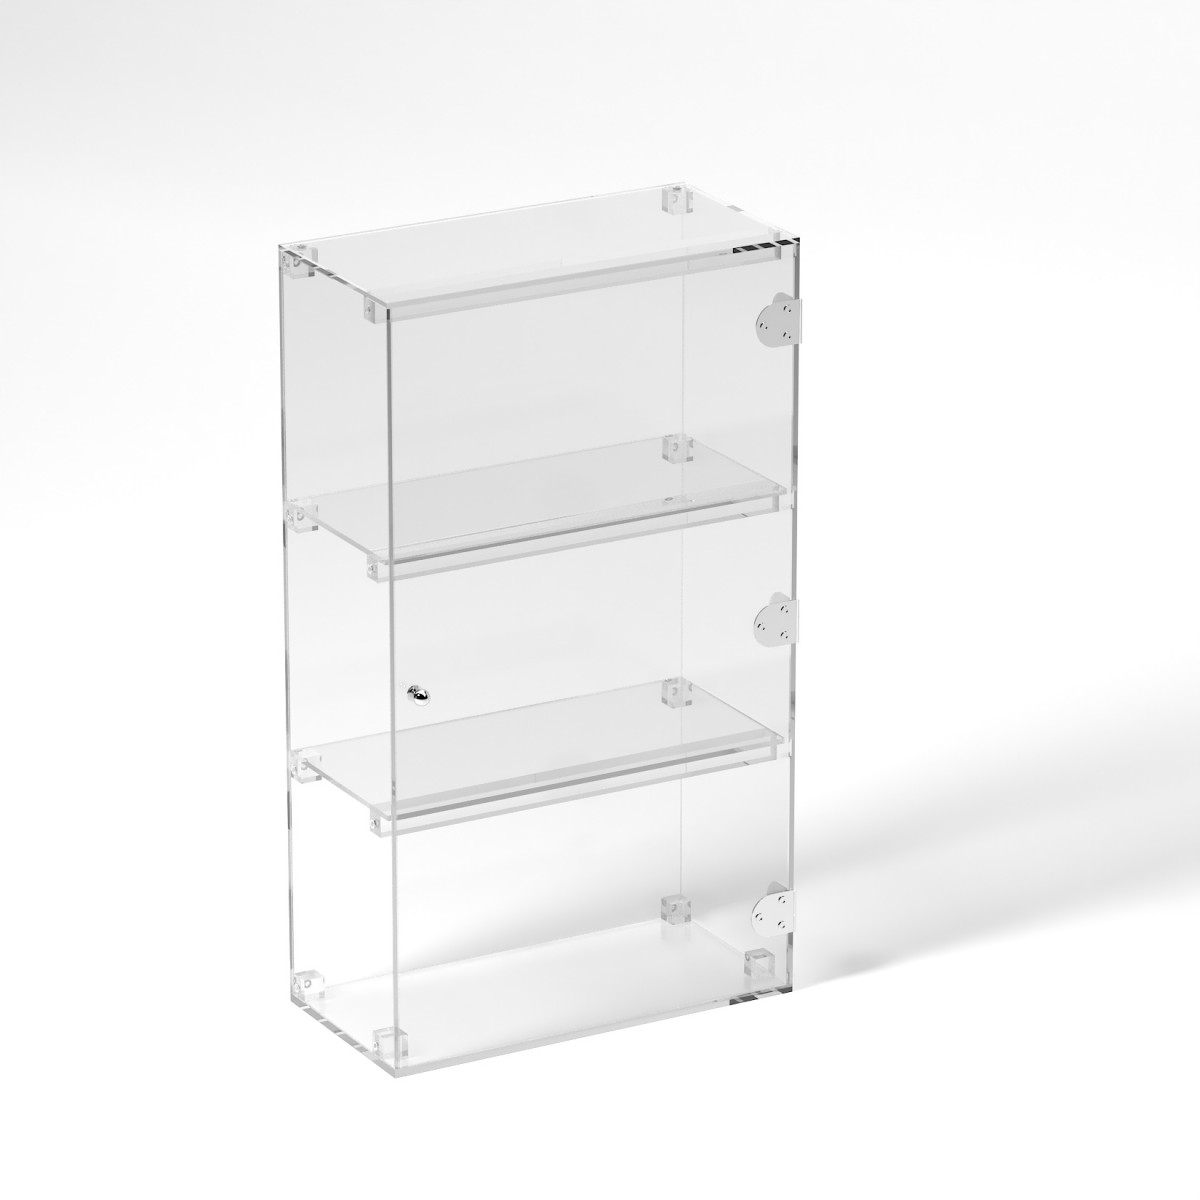 E-829 VET - Ampia vetrina espositiva in plexiglass trasparente a 3 ripiani - Misure: 40 x 20 x h70 cm